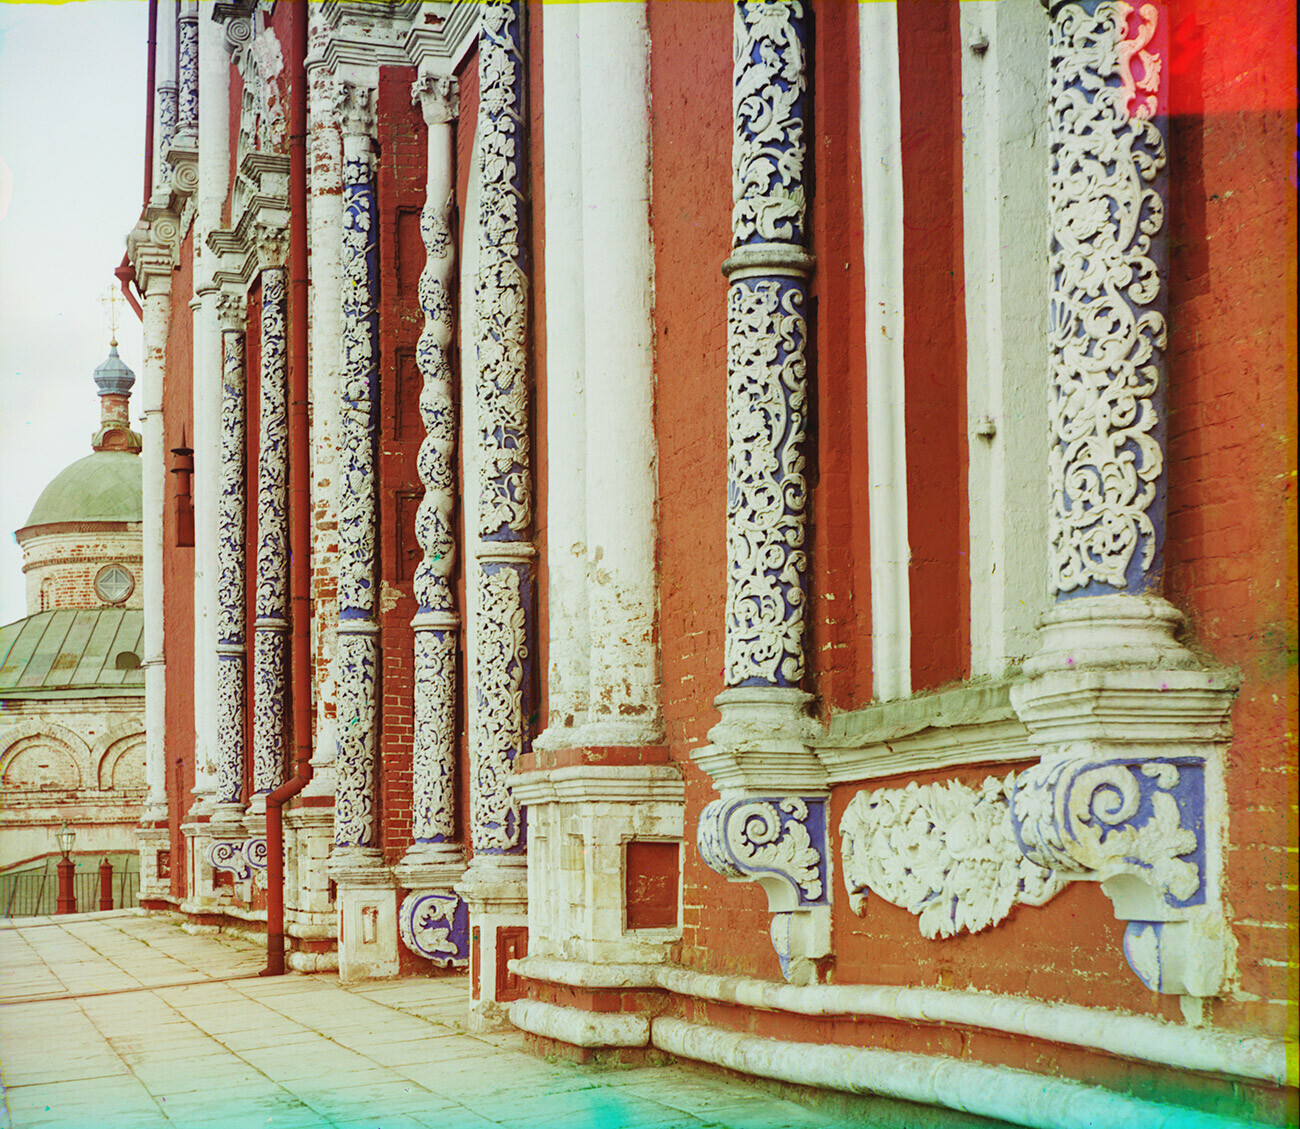 Kremlin de Riazán. Catedral de la Dormición de la Virgen. Fachada norte con columnas de piedra caliza tallada. Verano de 1912. Serguéi Prokudin-Gorski